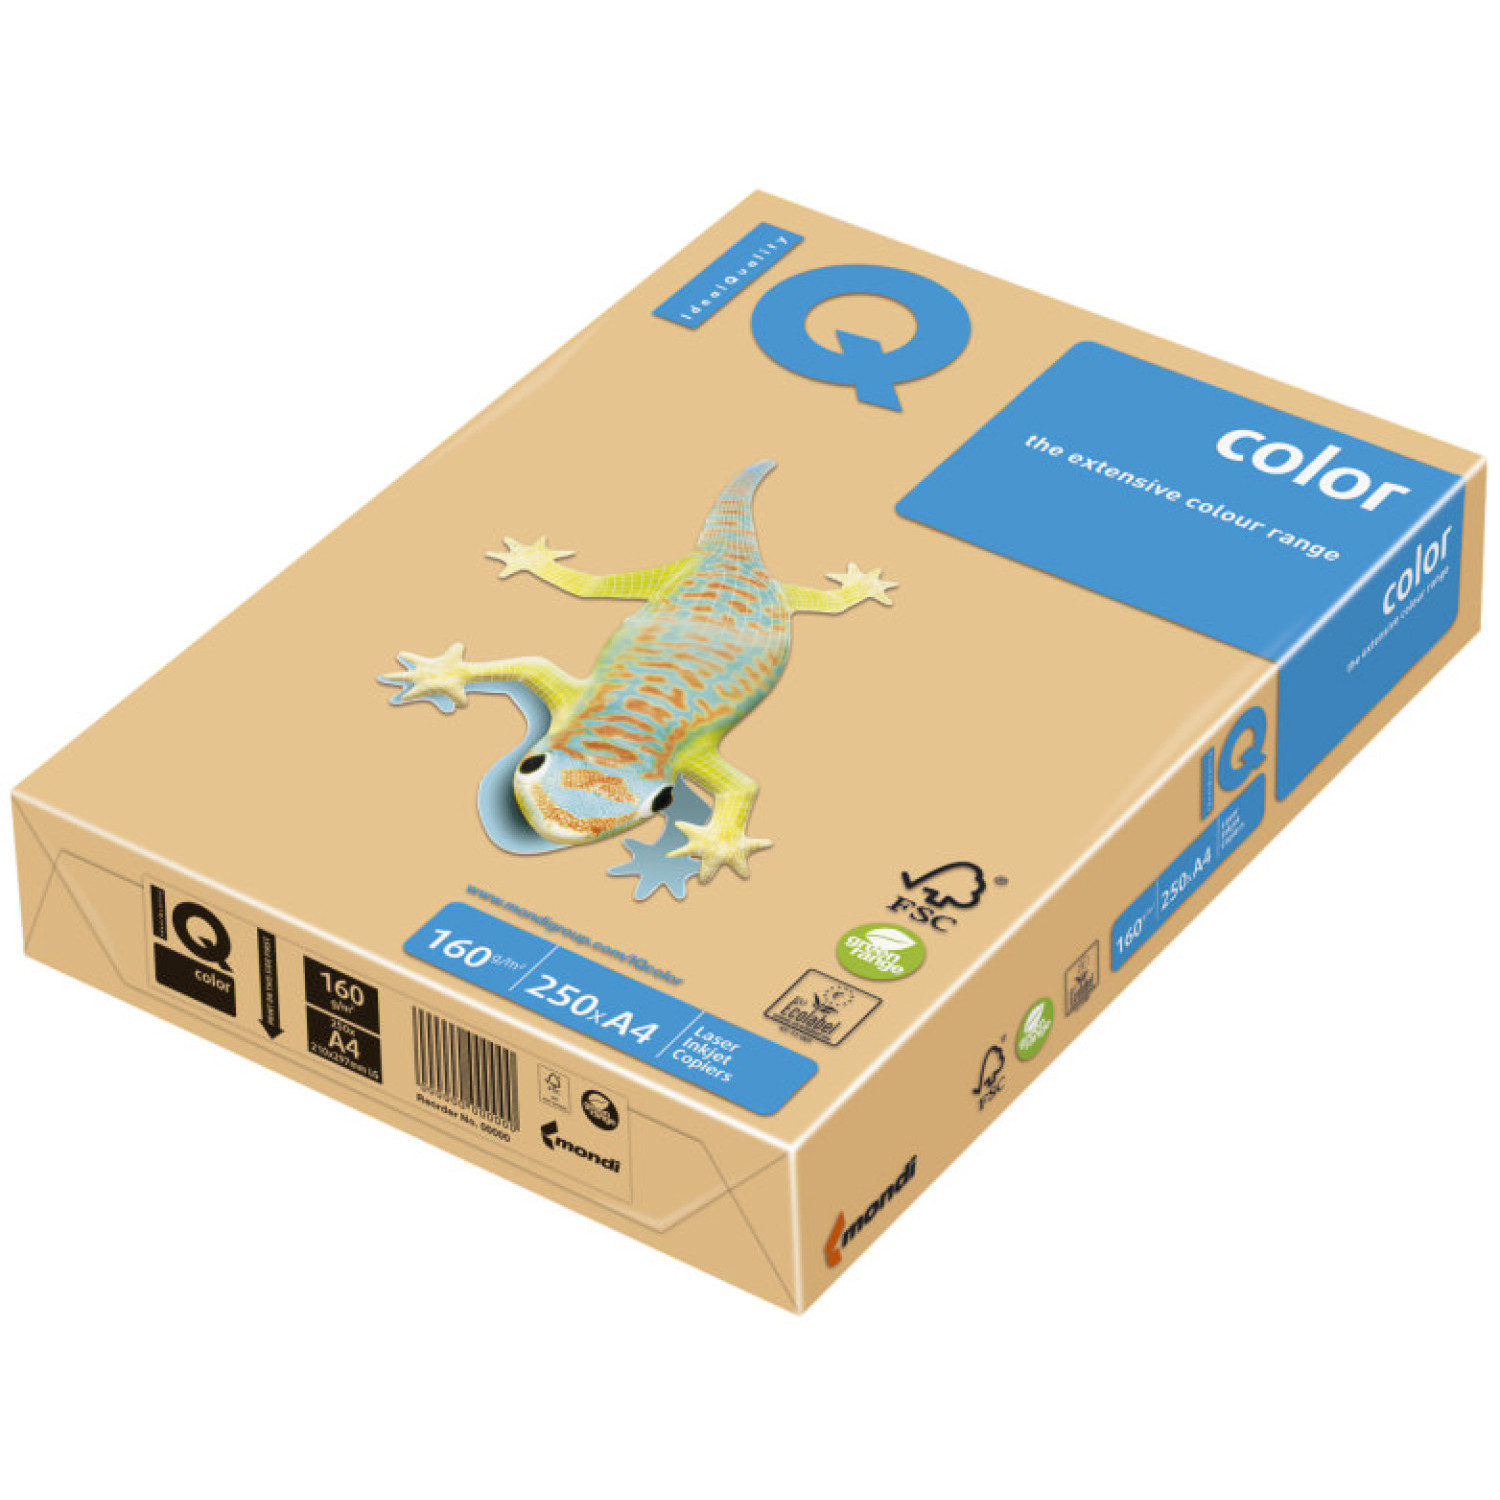 Копирен картон IQ GO22, 160 гр., златно-жълт